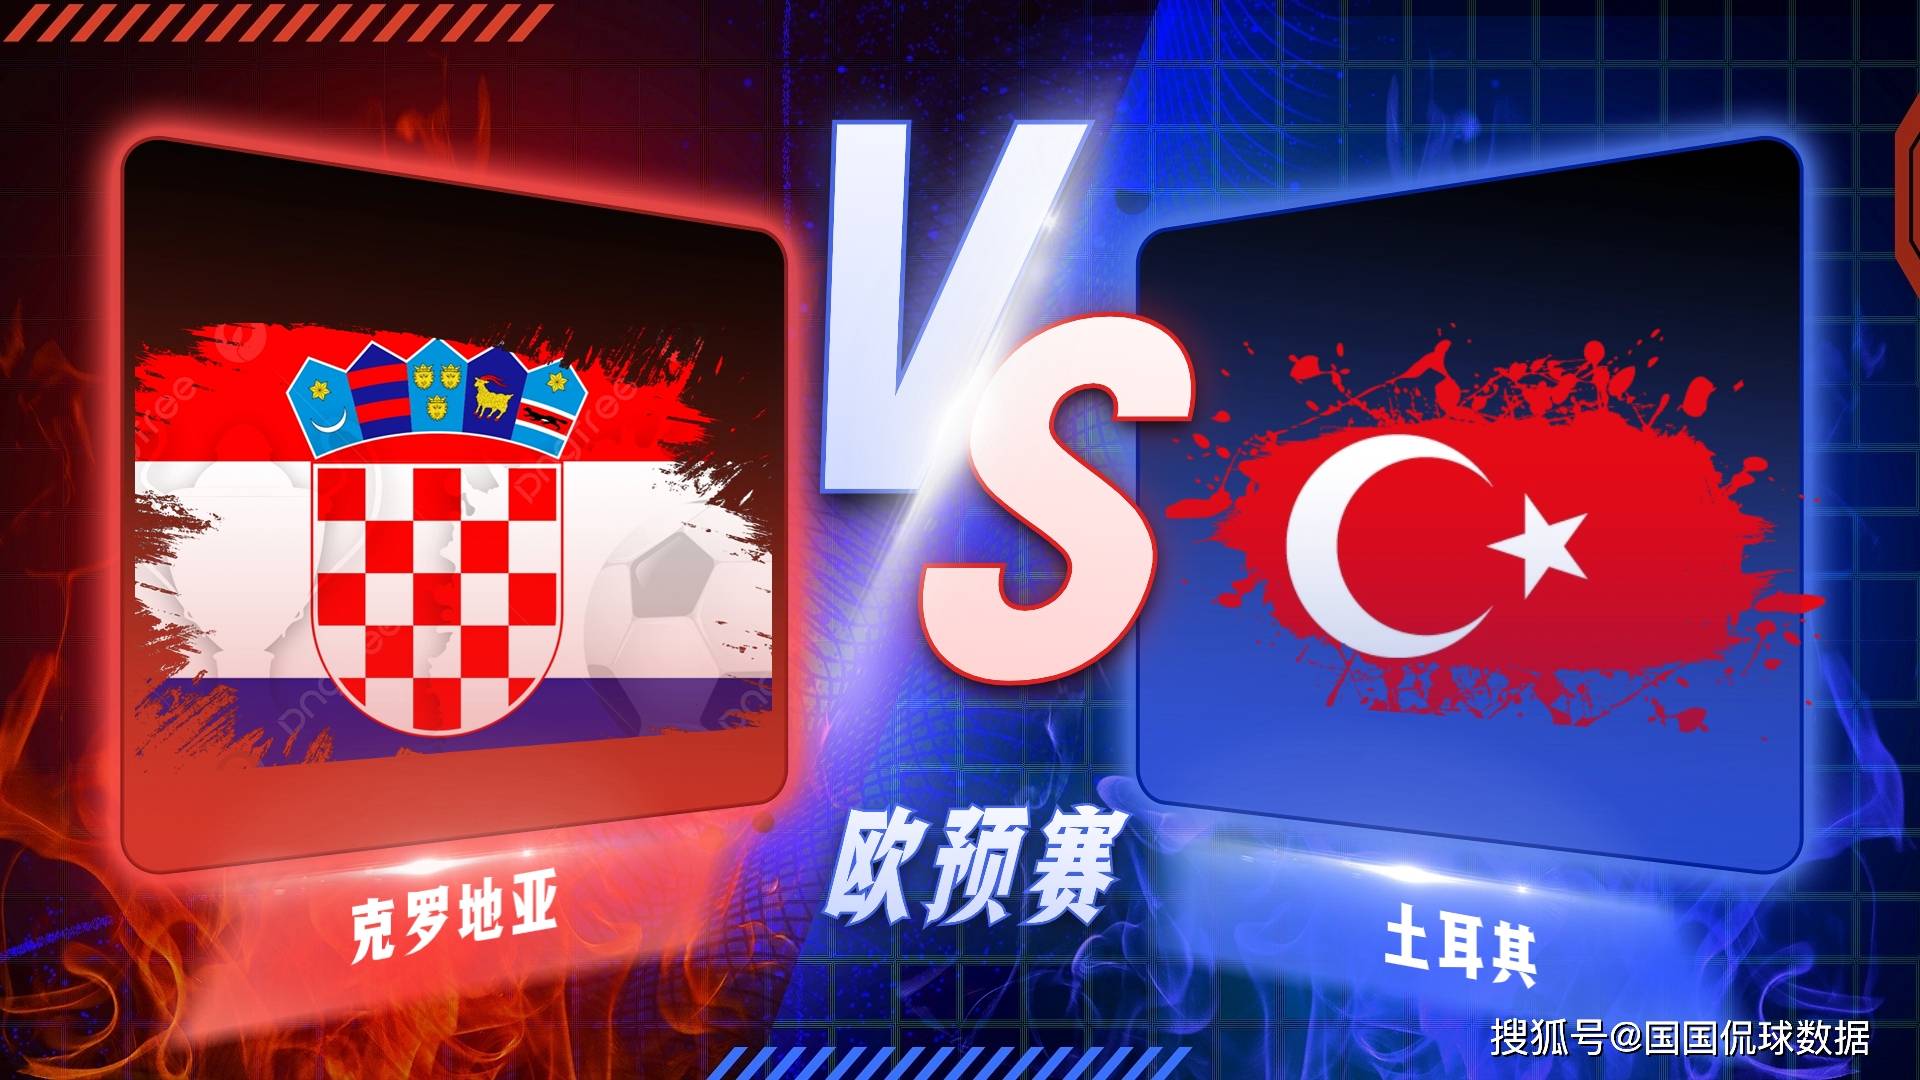 168娱乐-欧洲杯前瞻比分预测-克罗地亚对决土耳其